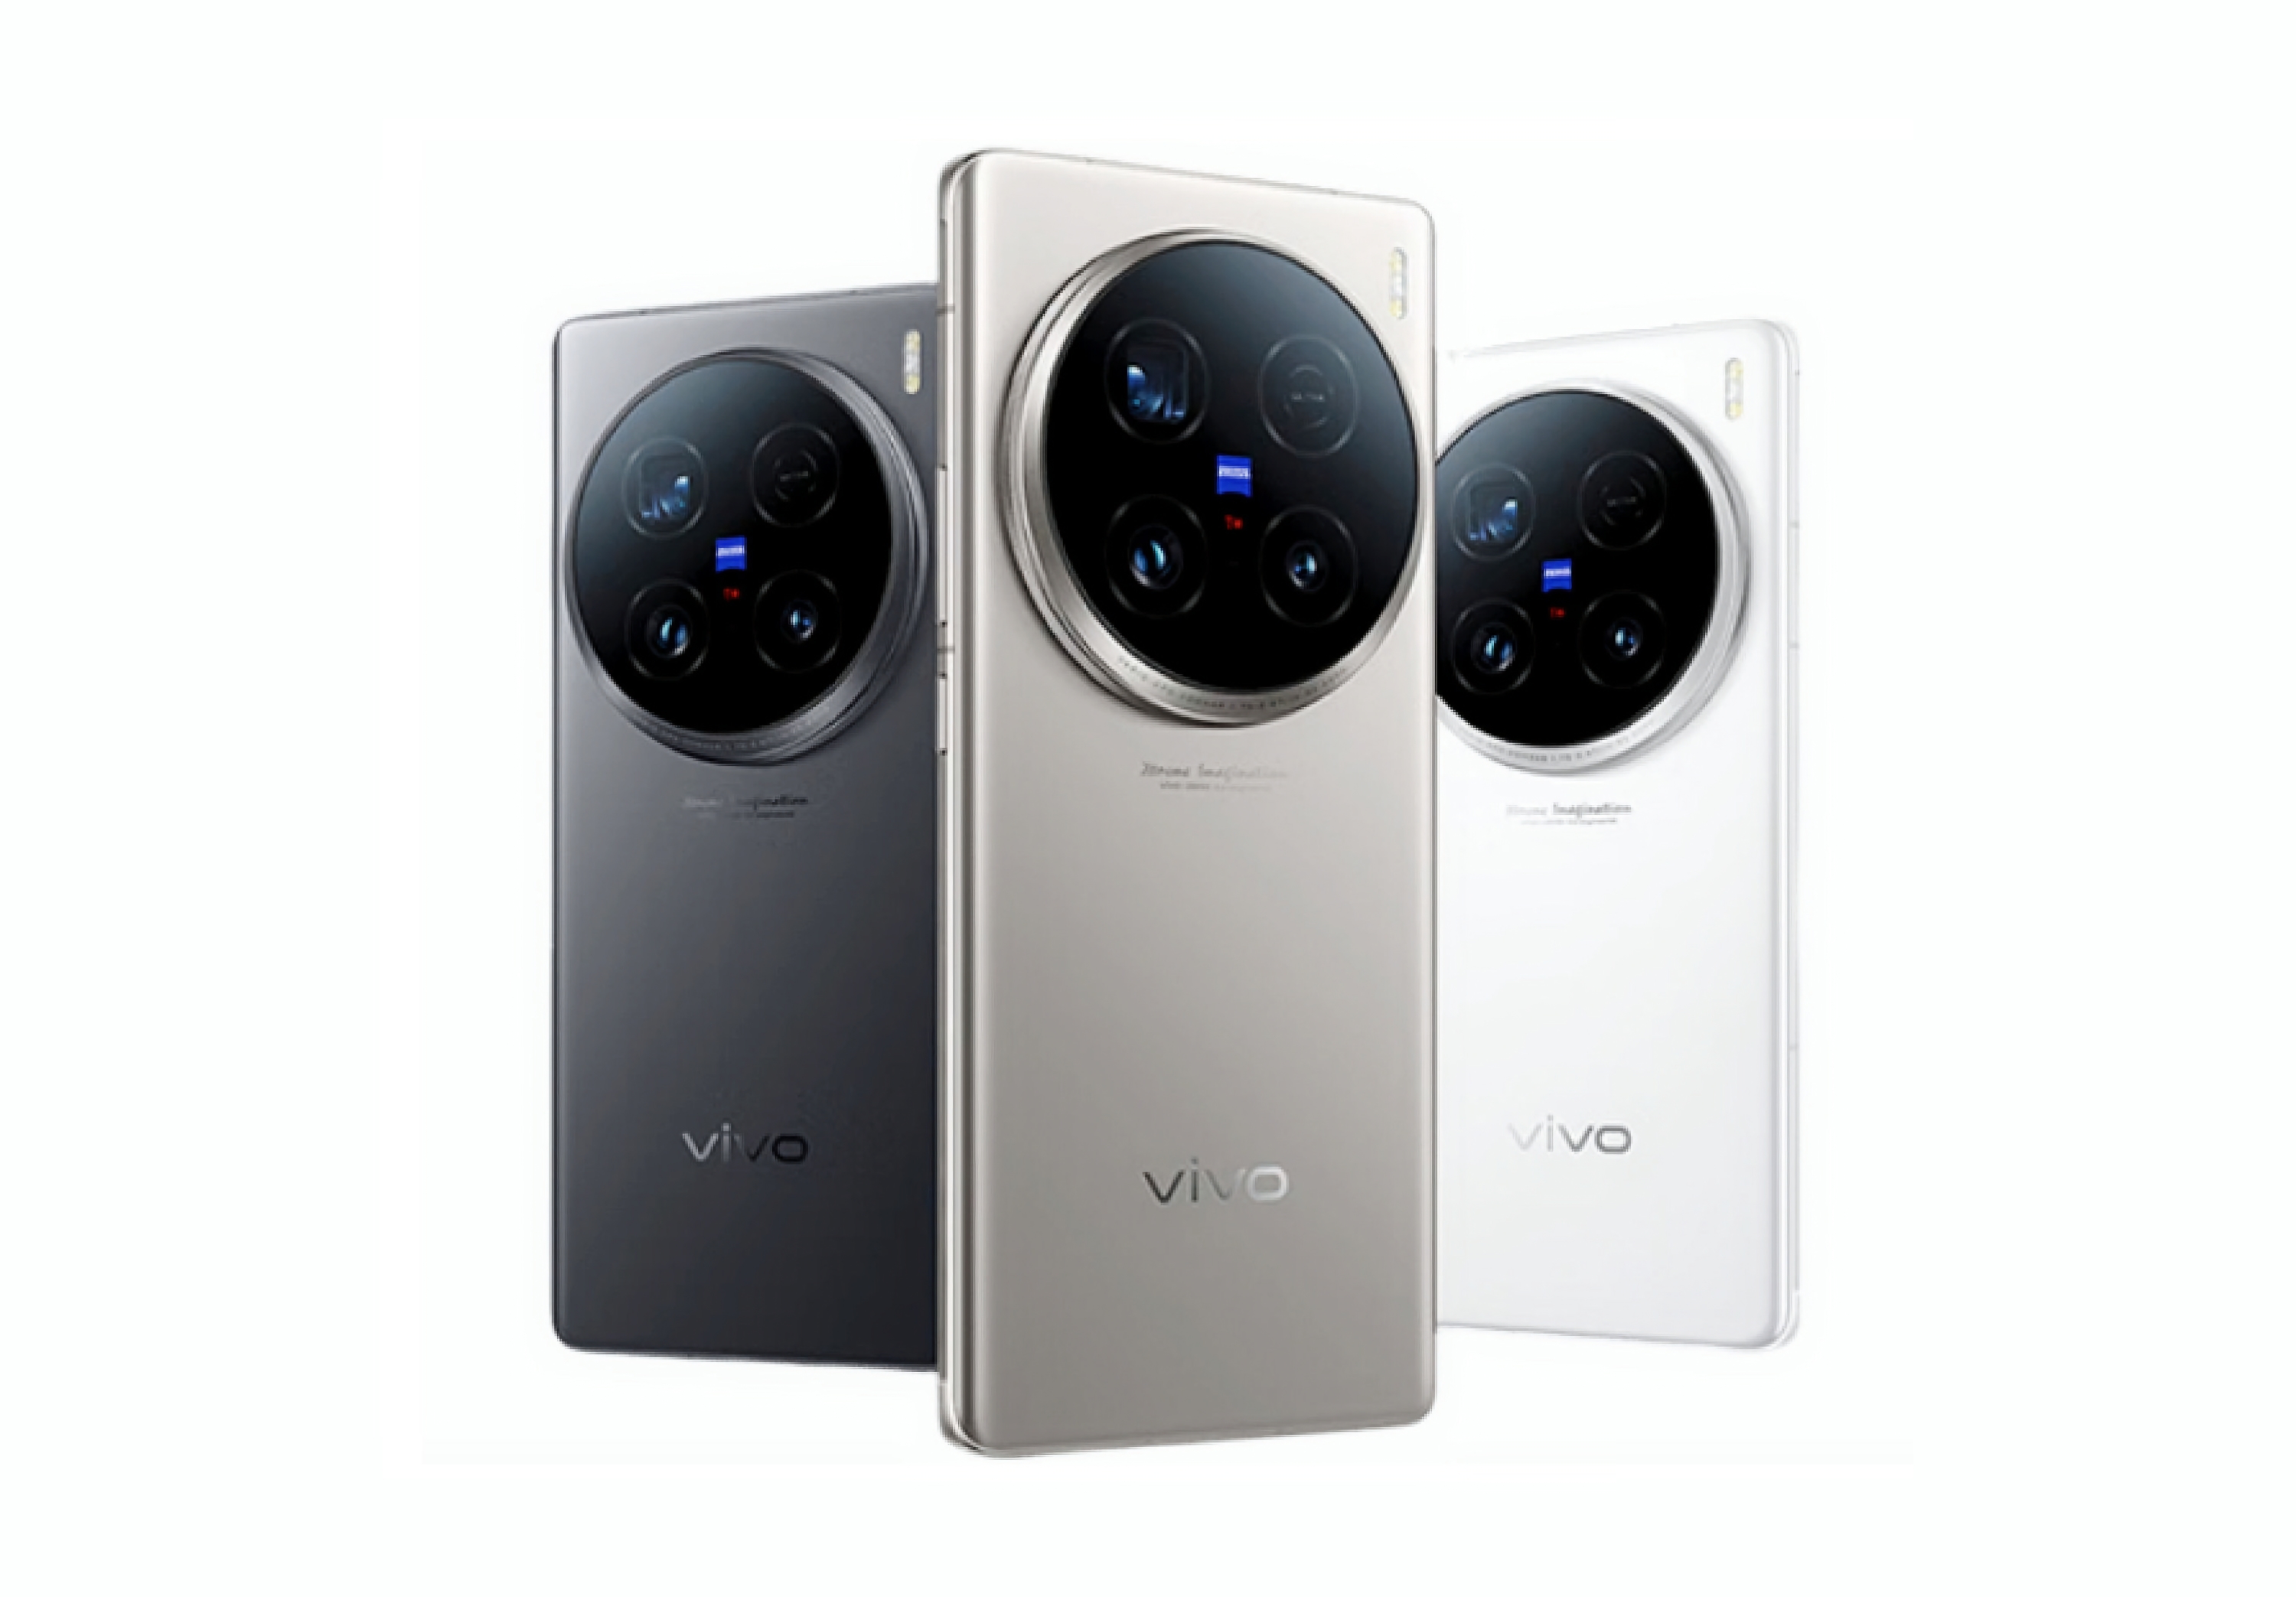 Le vivo X100 Ultra bénéficie d'une mise à jour logicielle qui améliore l'appareil photo et l'autonomie de la batterie